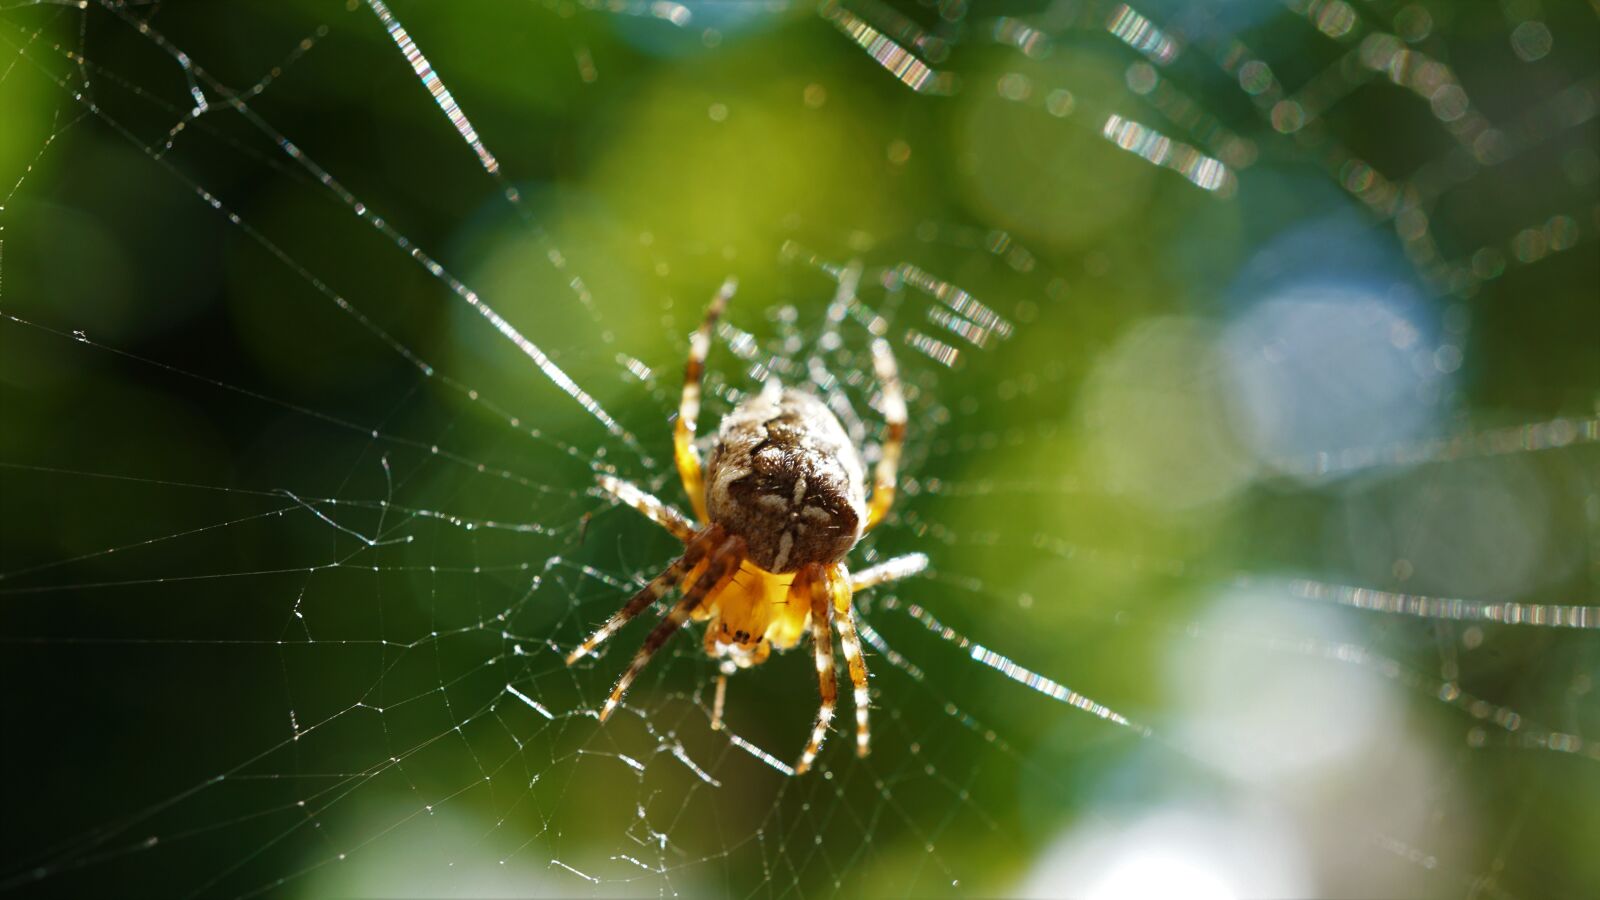 Sony E 30mm F3.5 Macro sample photo. Araneus, spider, cobweb photography